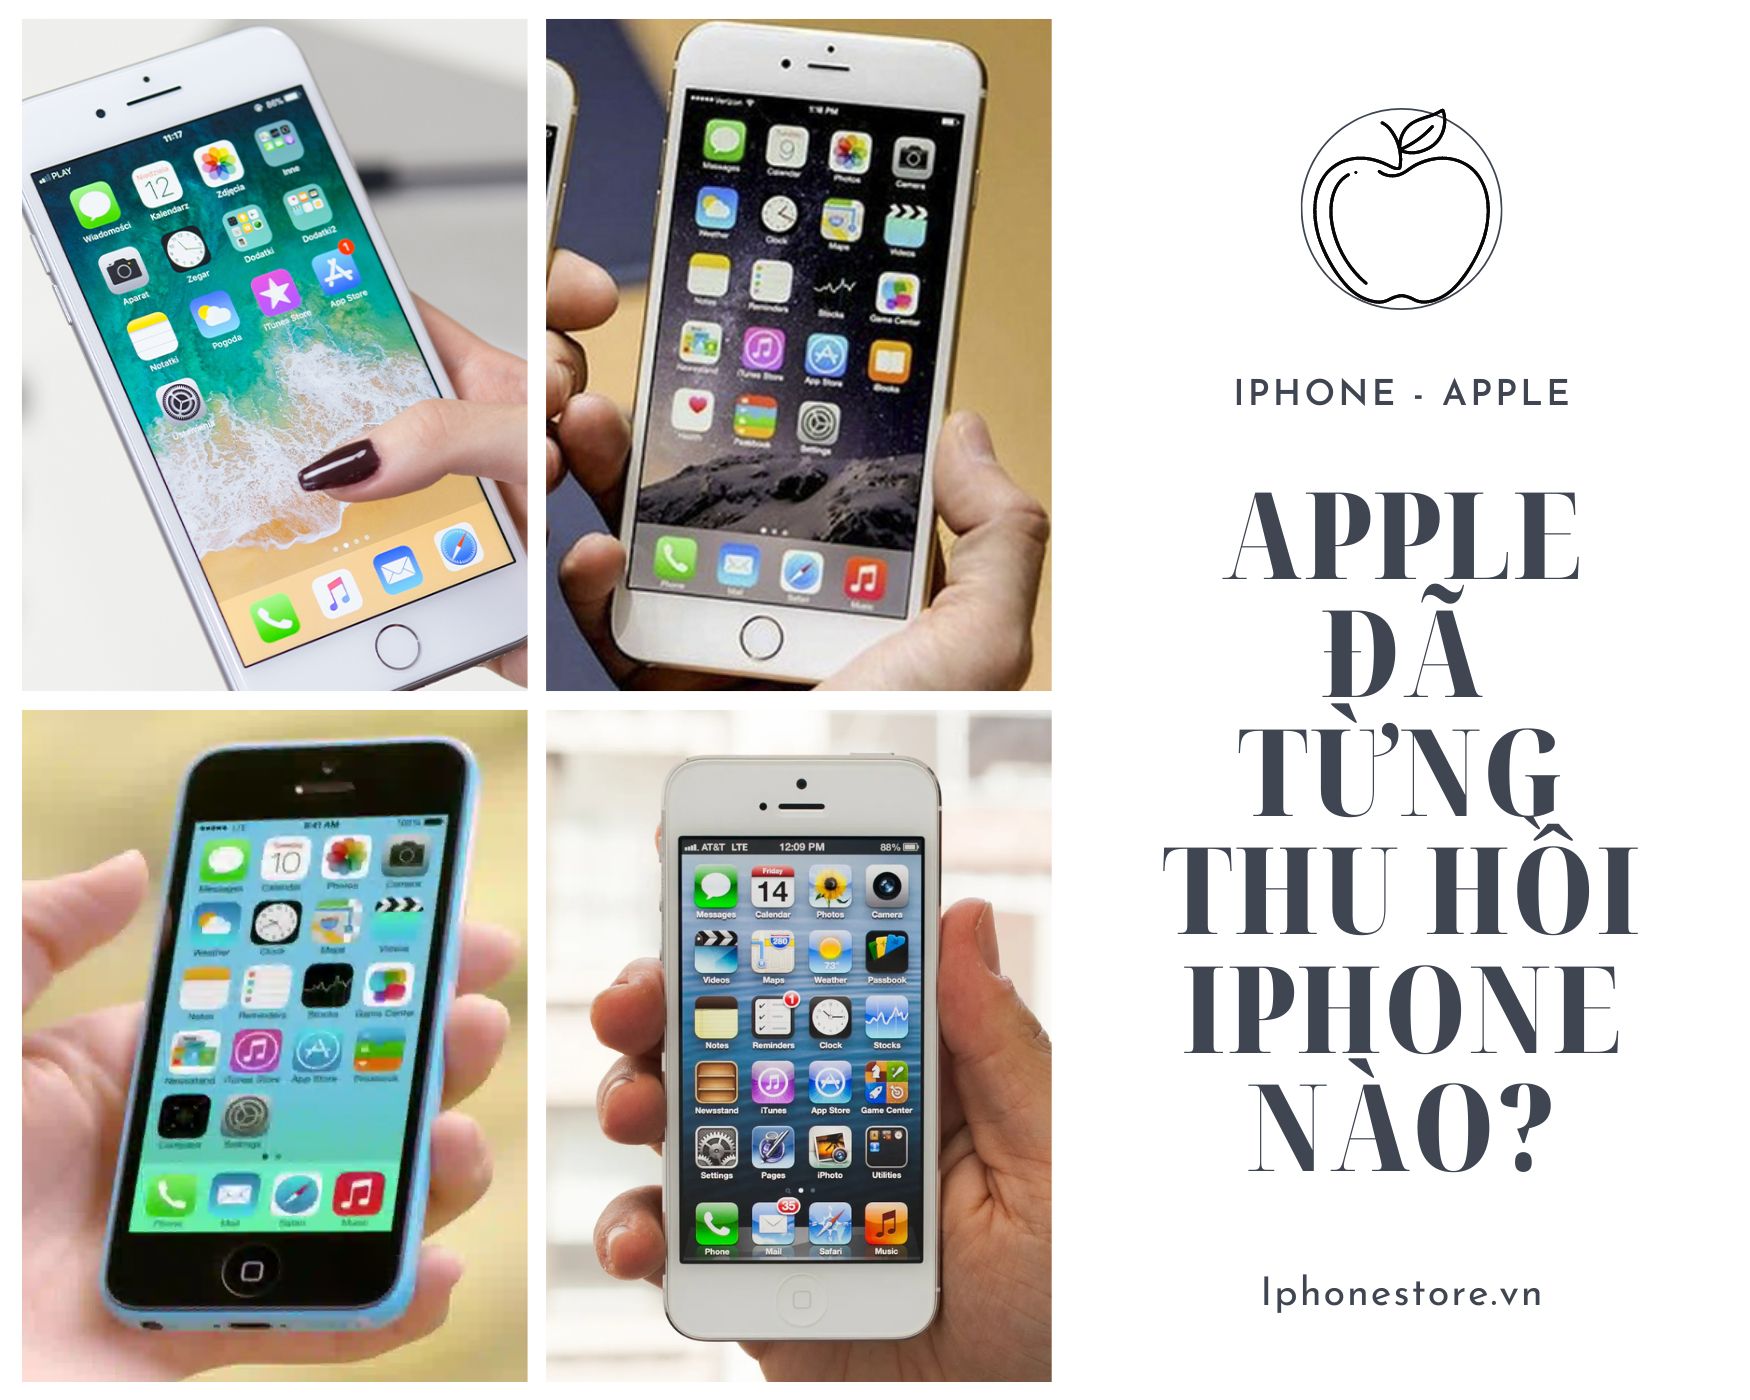 Tổng hợp: Apple đã từng thu hồi Iphone nào?